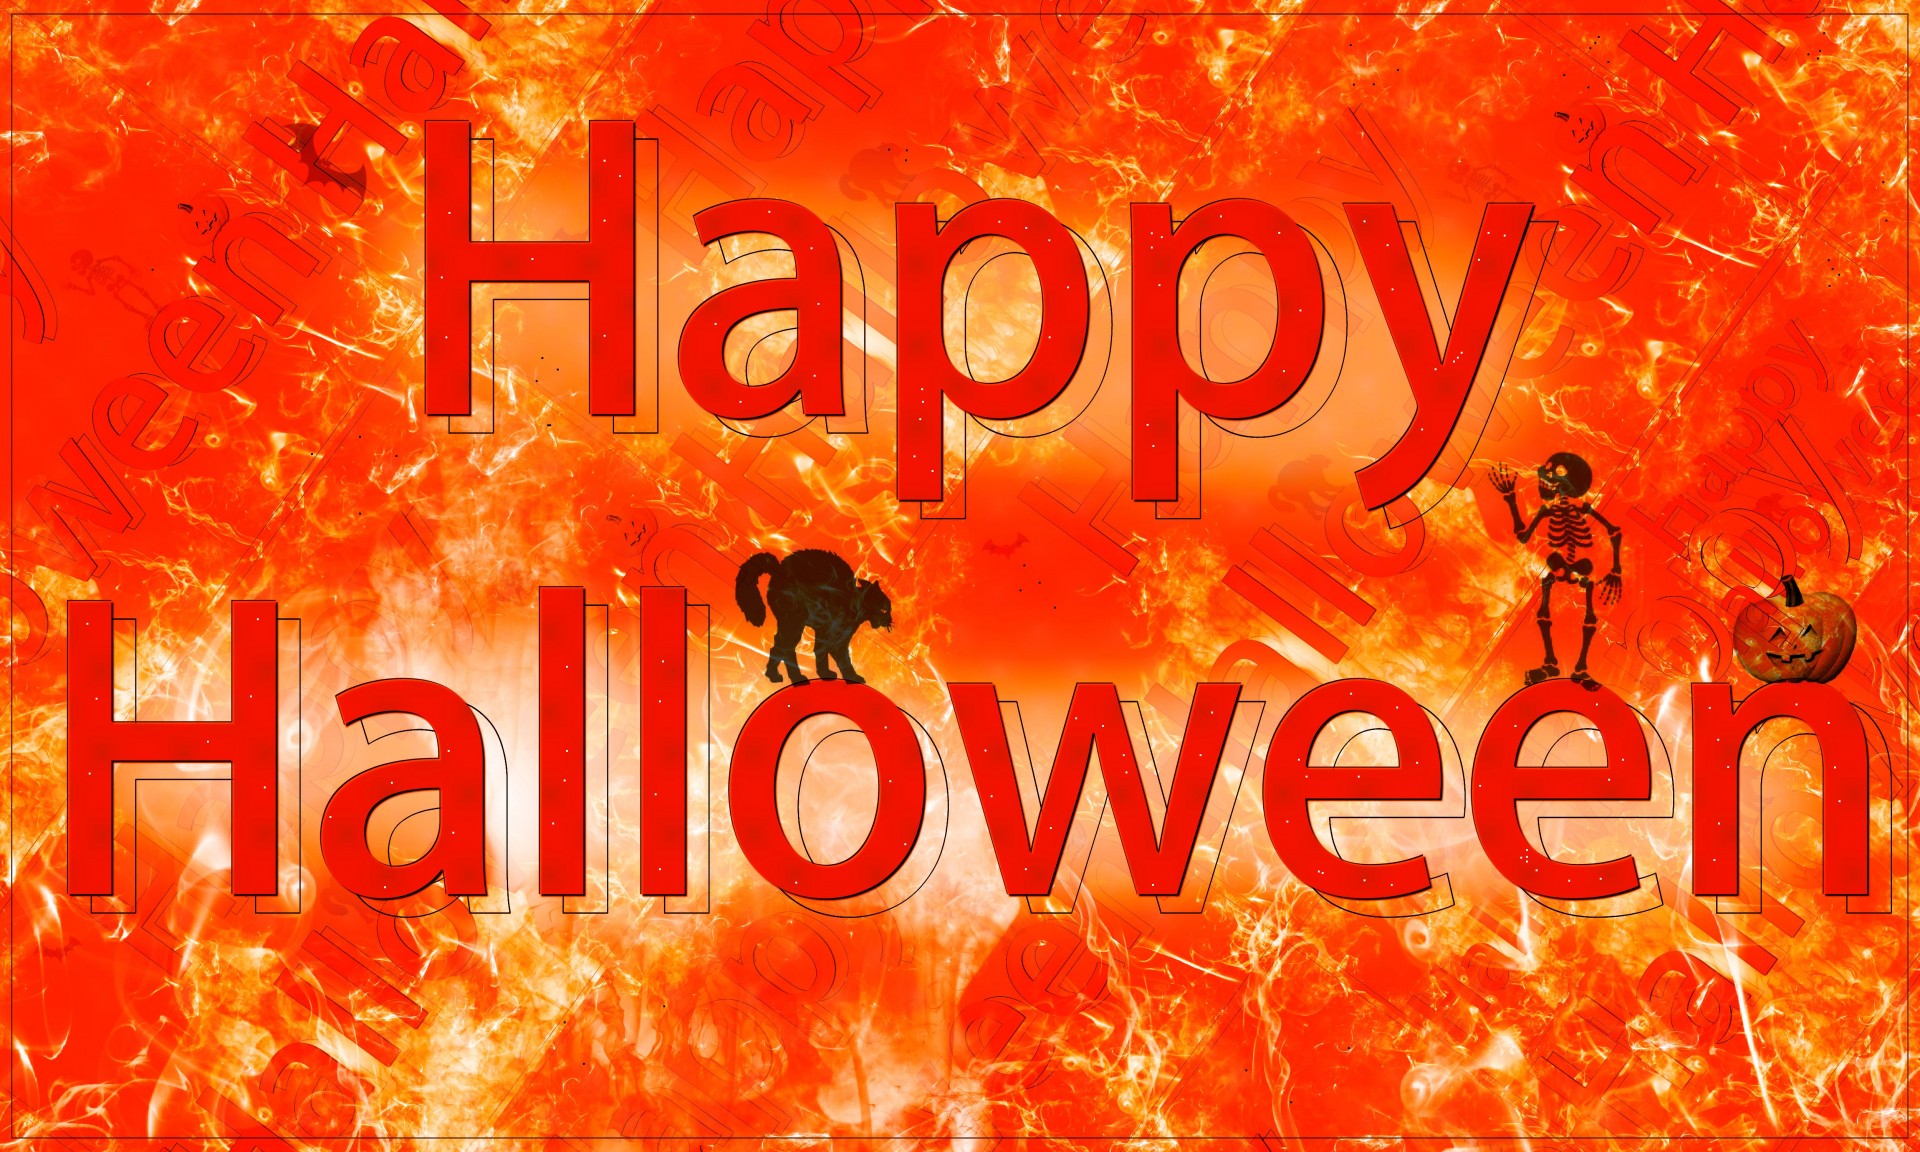 Laimingas & Nbsp,  Halloween,  Tekstas,  Dažyti & Nbsp,  Šepečius,  Tekstūra,  Katė,  Šikšnosparnis,  Moliūgas,  Skeletas